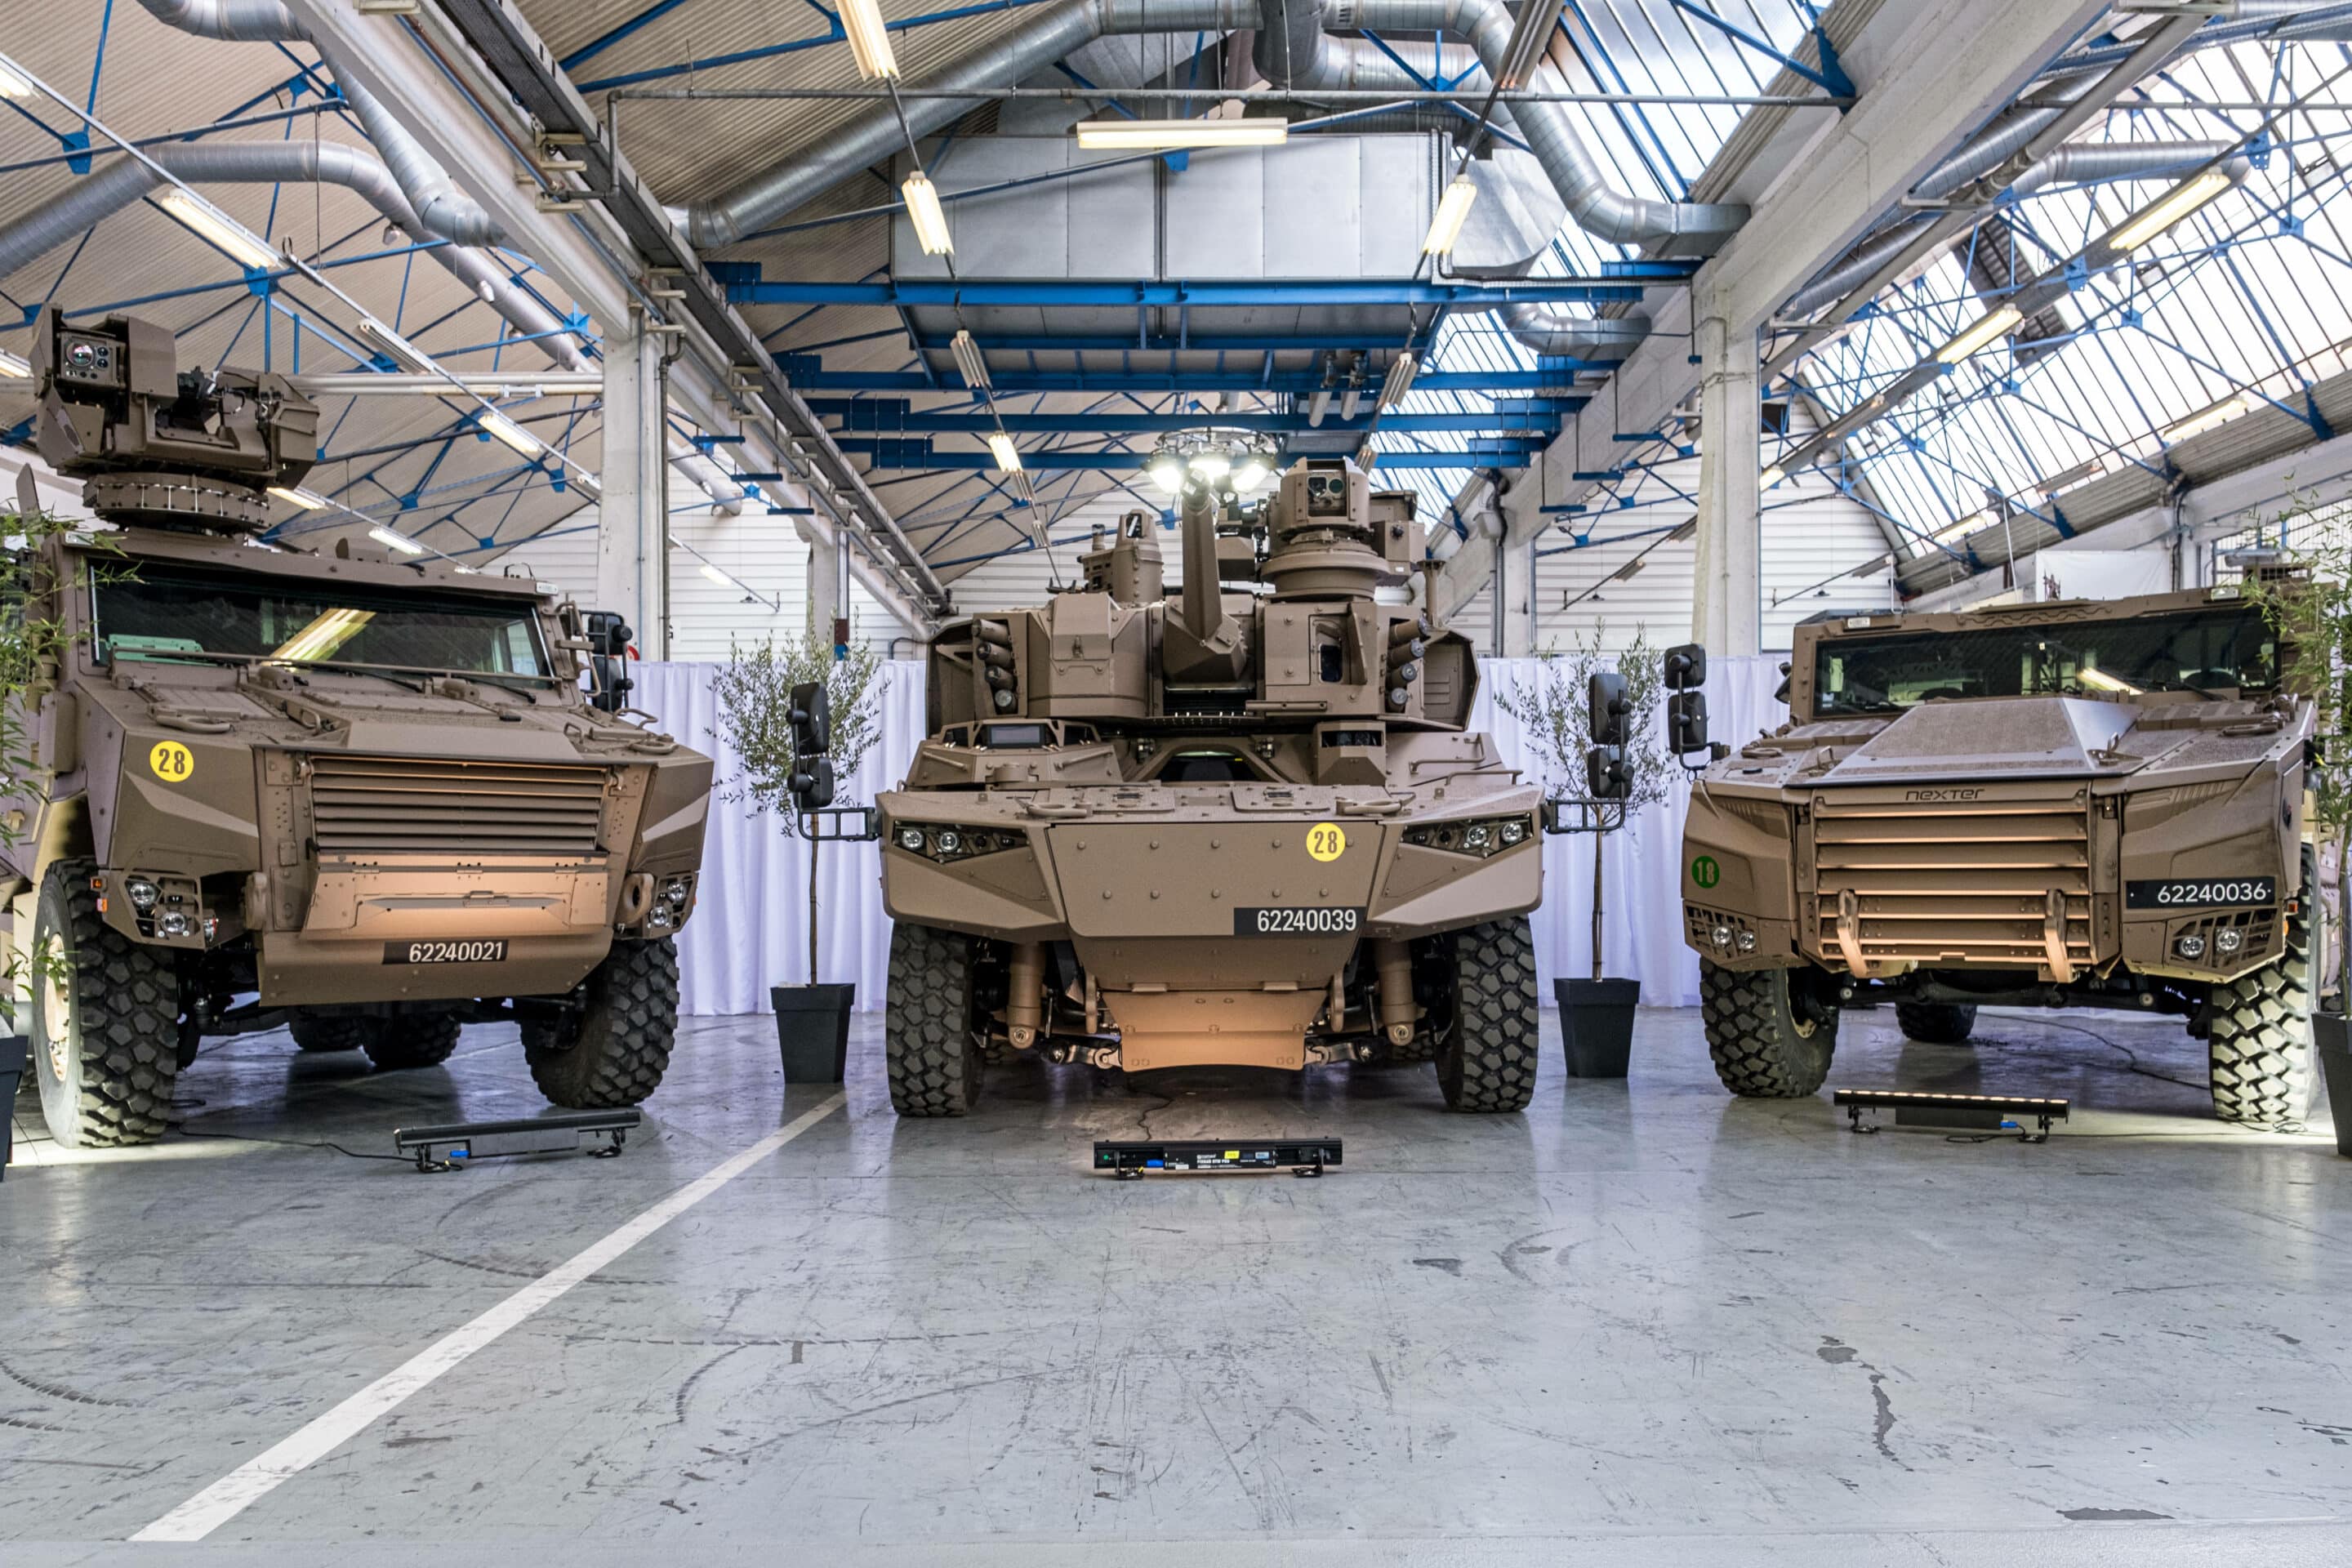 Les trois nouveaux véhicules de l'Armée française, dans le cadre du programme Scorpion lancé en 2022. /KONRADK_konrad-017/2202211000/Credit:KONRAD K./SIPA/2202211004